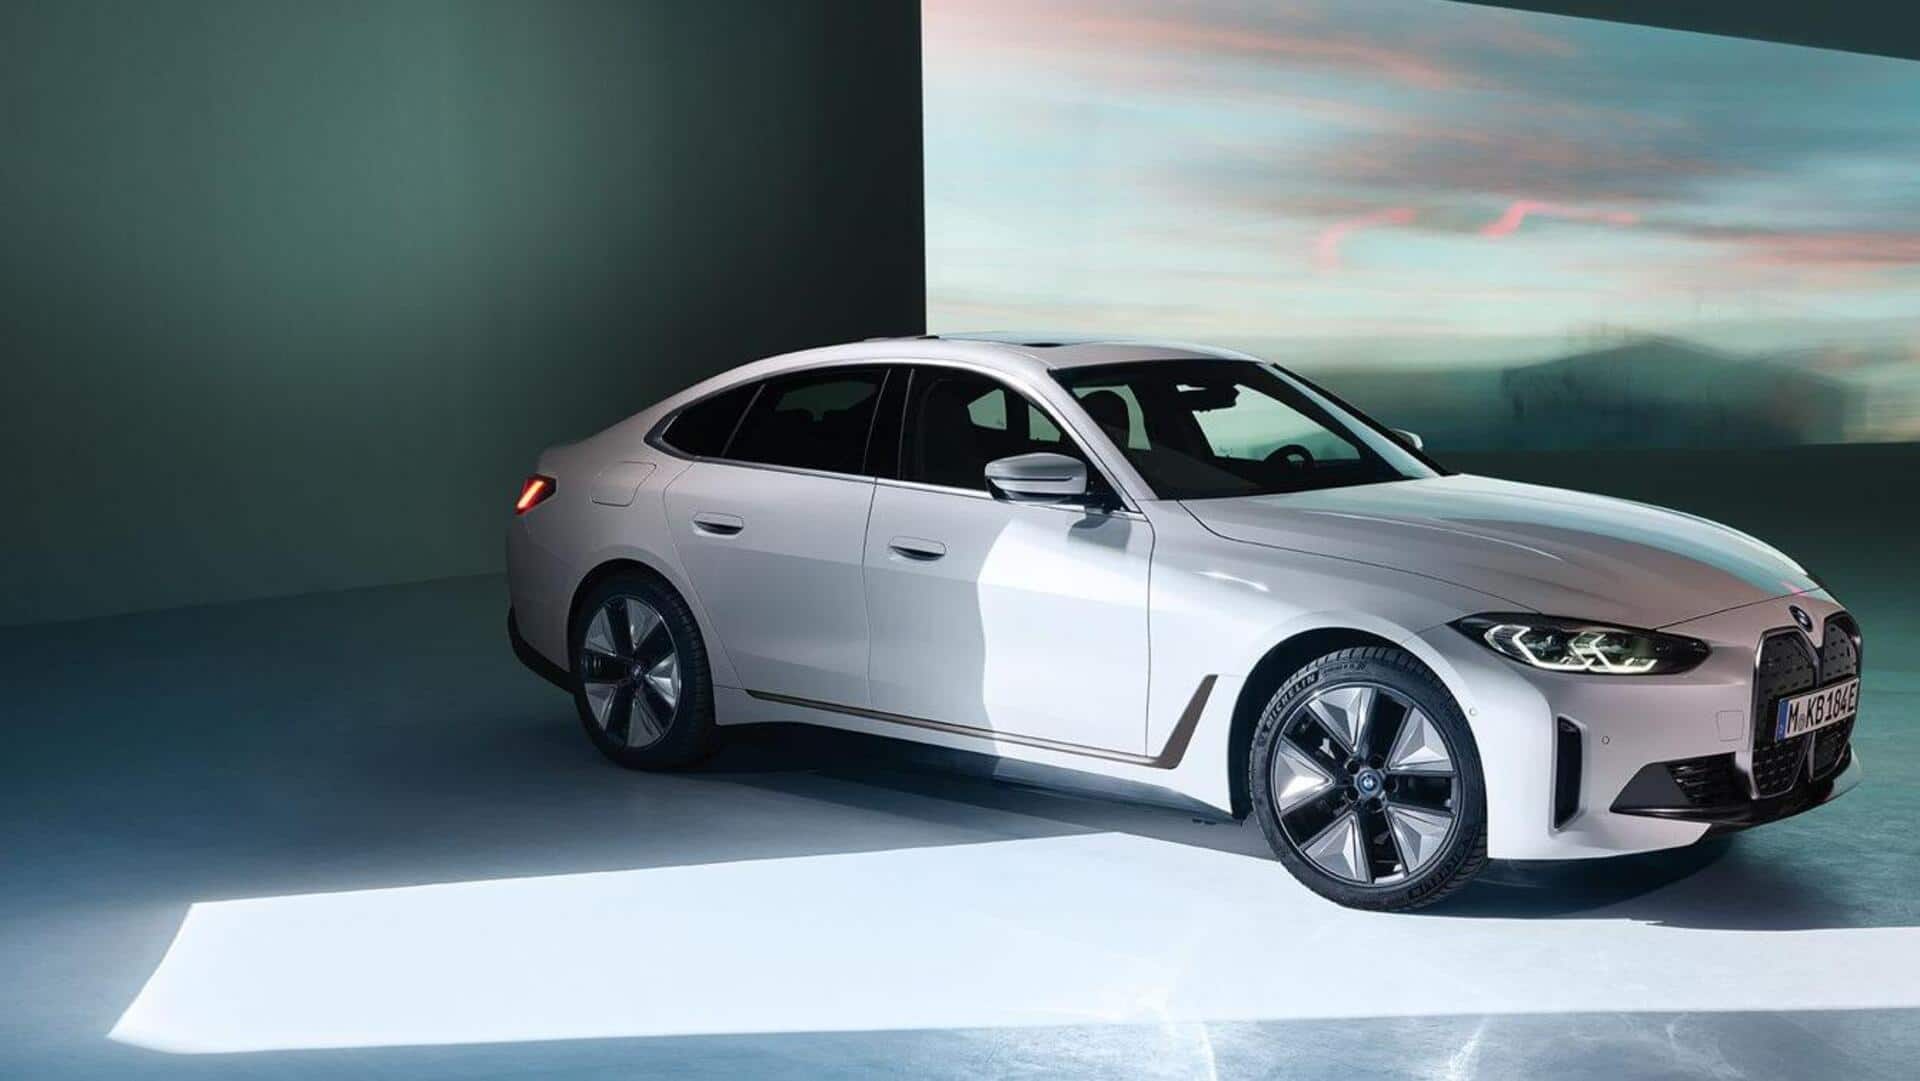 BMW की पेट्रोल कारों की बिक्री ने पार किया चरम, कंपनी को अब इलेक्ट्रिक से उम्मीद